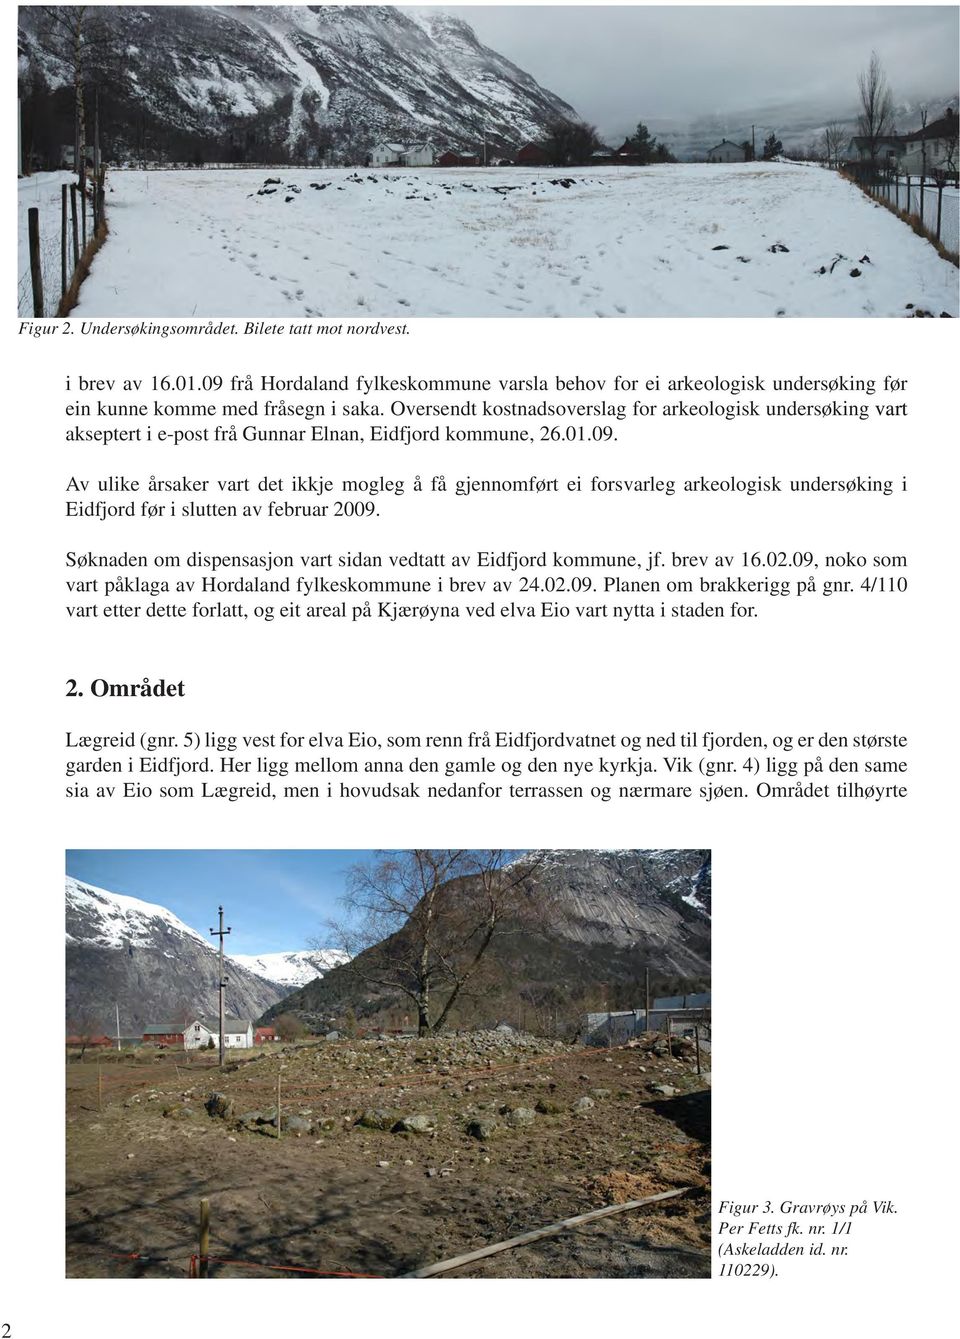 Av ulike årsaker vart det ikkje mogleg å få gjennomført ei forsvarleg arkeologisk undersøking i Eidfjord før i slutten av februar 2009.